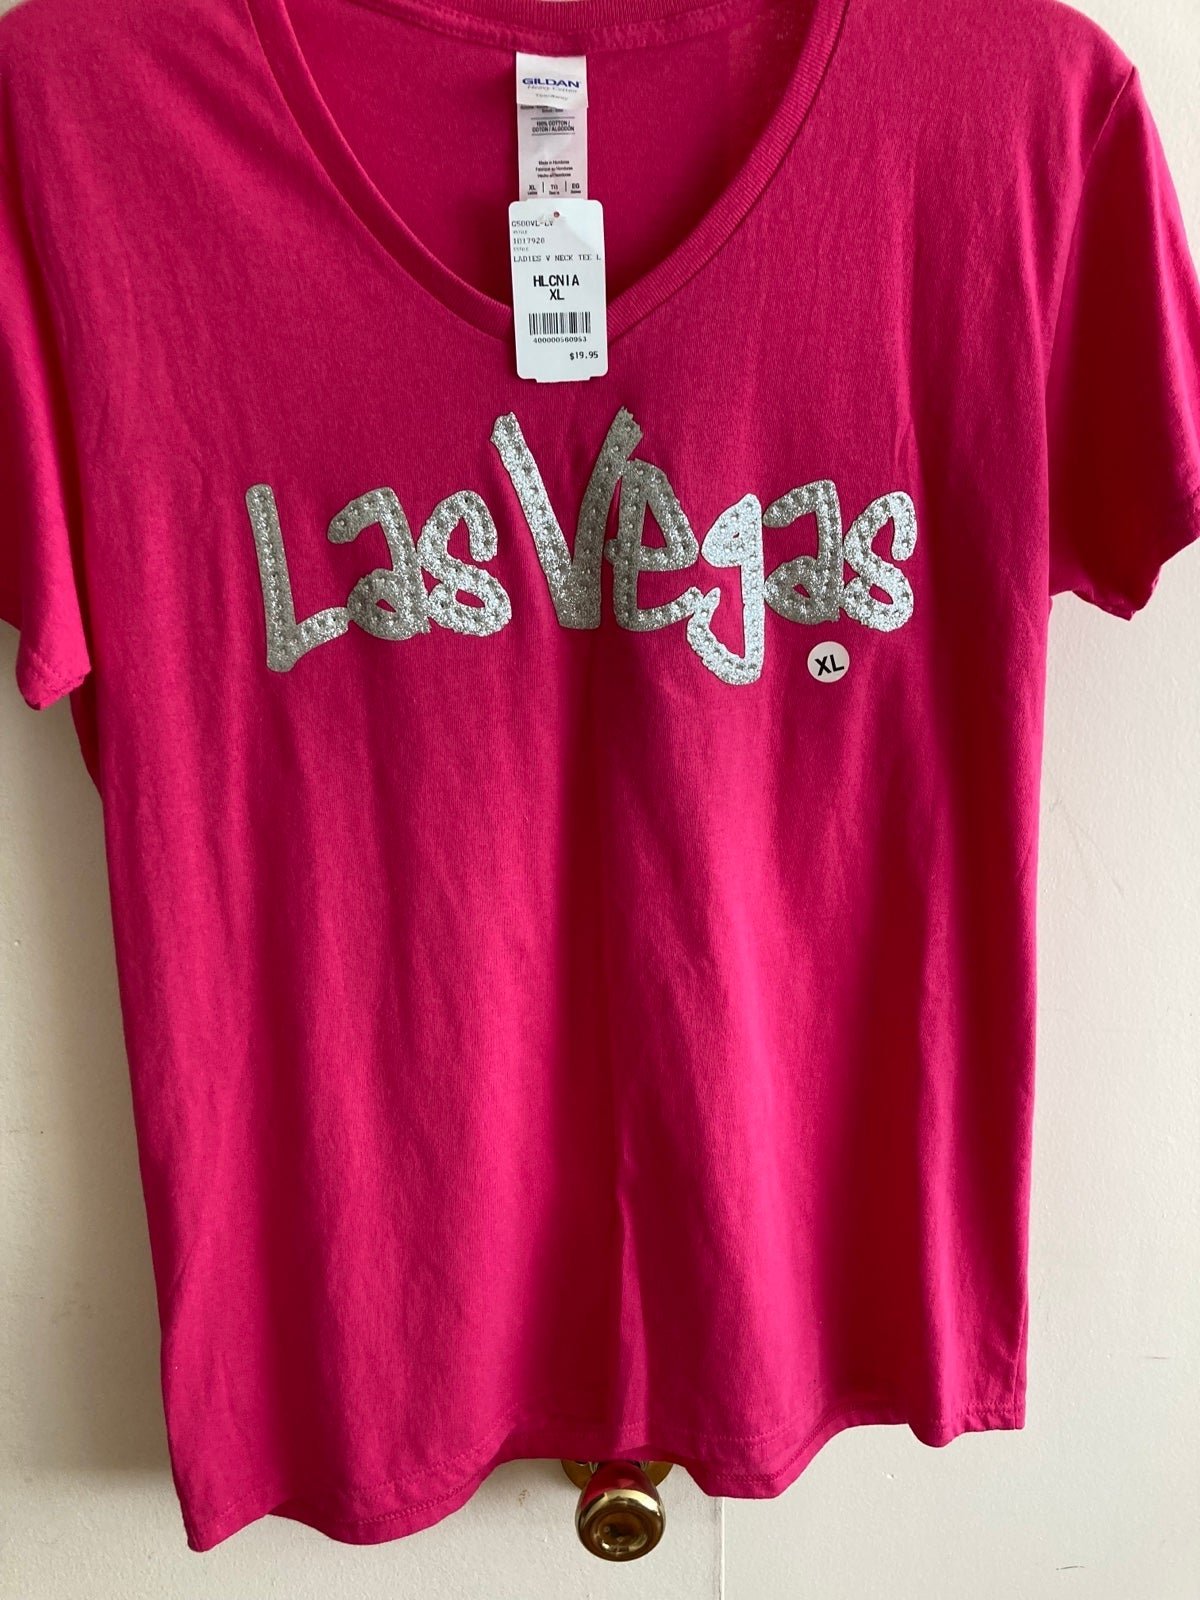 large discount 100% Cotton “Las Vegas” T-shirt Size XL 